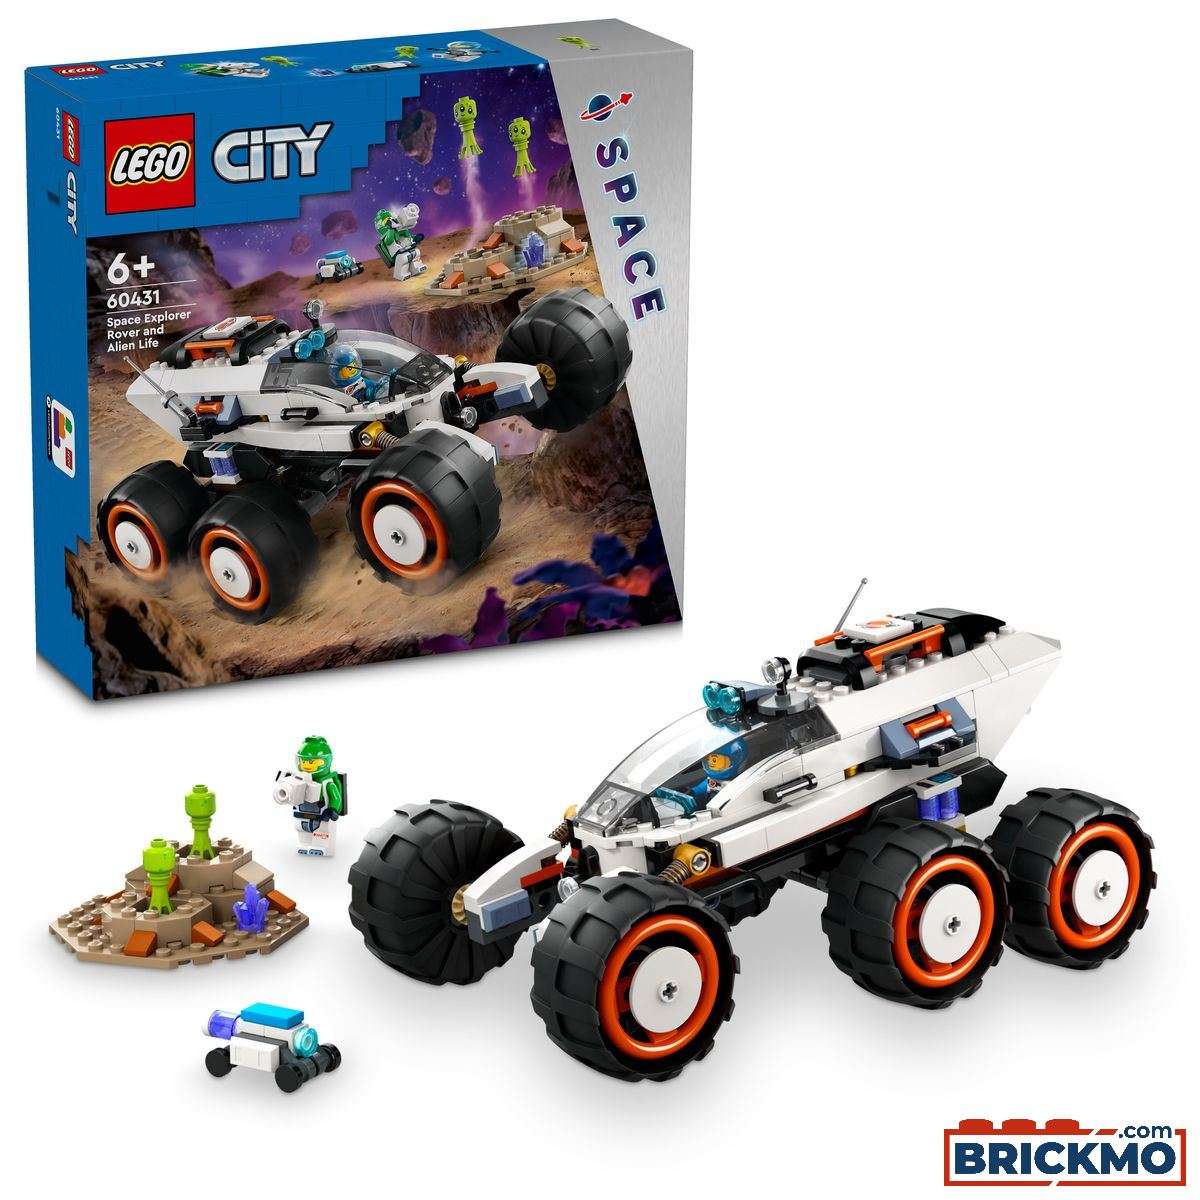 LEGO City 60431 Róver Explorador Espacial y Vida Extraterrestre 60431